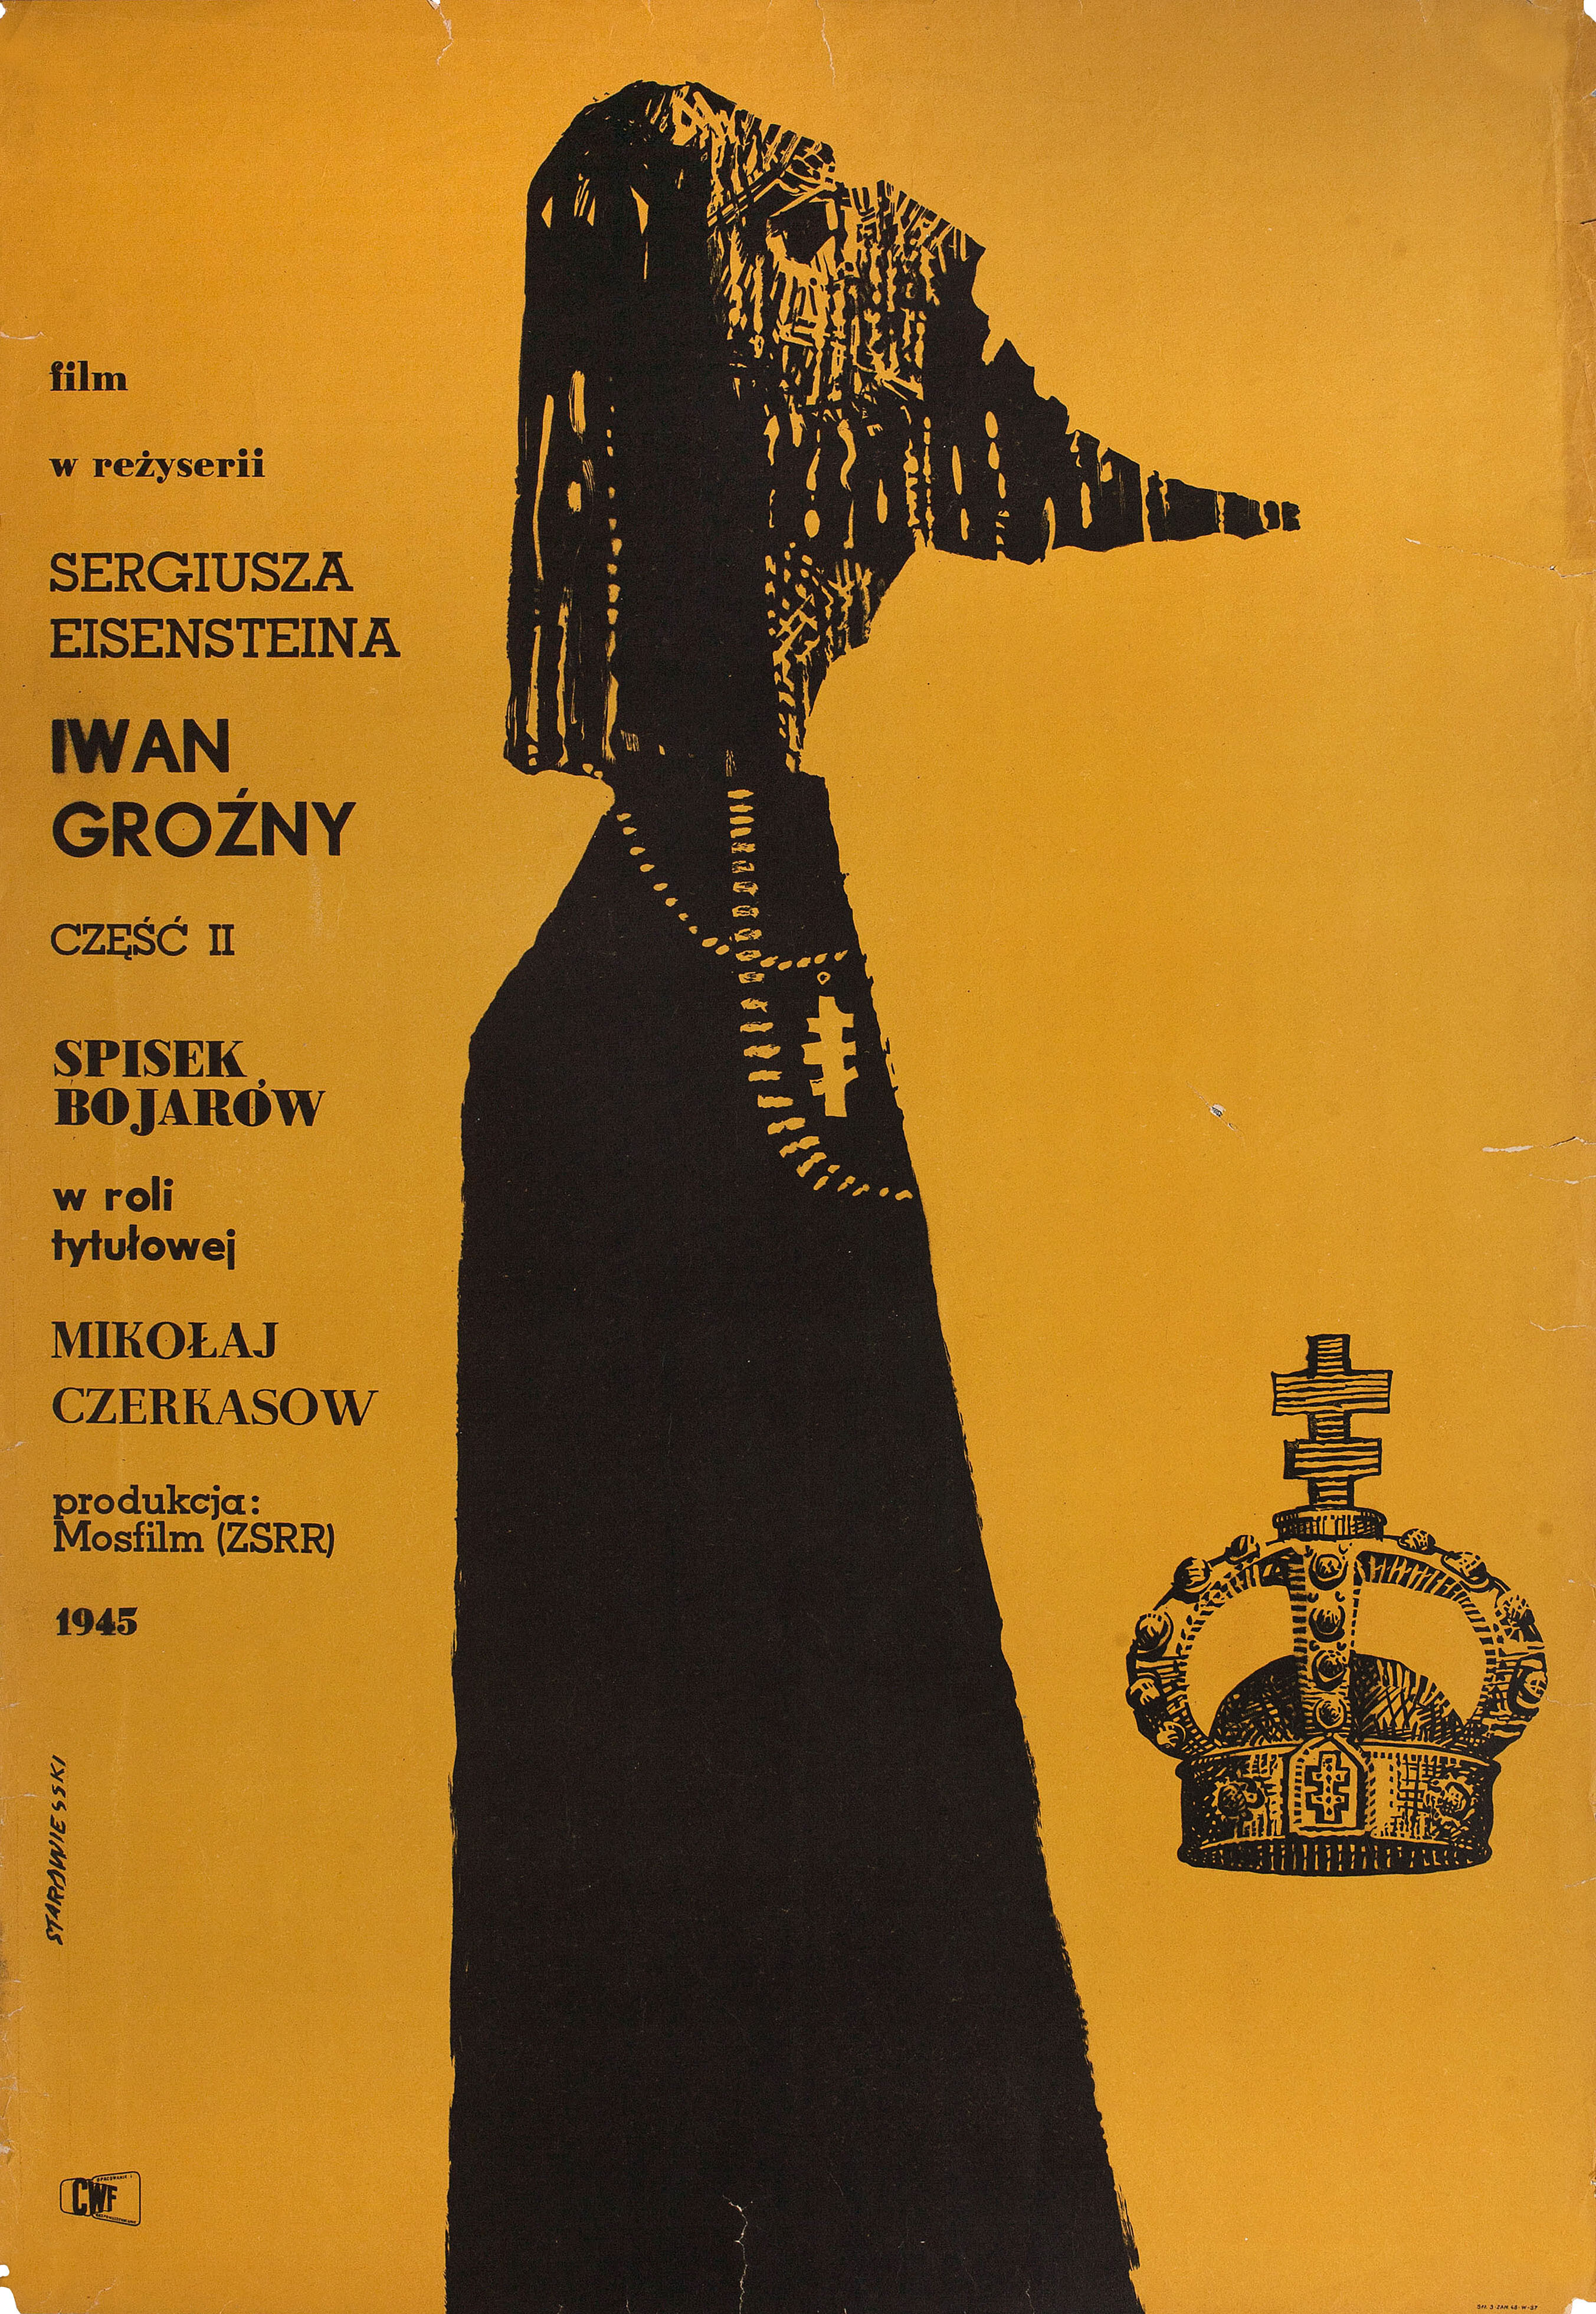 Иван Грозный (режиссёр Сергей Михайлович Эйзенштейн, 1944), 1 часть, польский постер к фильму, автор Францишек Старовейский, 1950 год